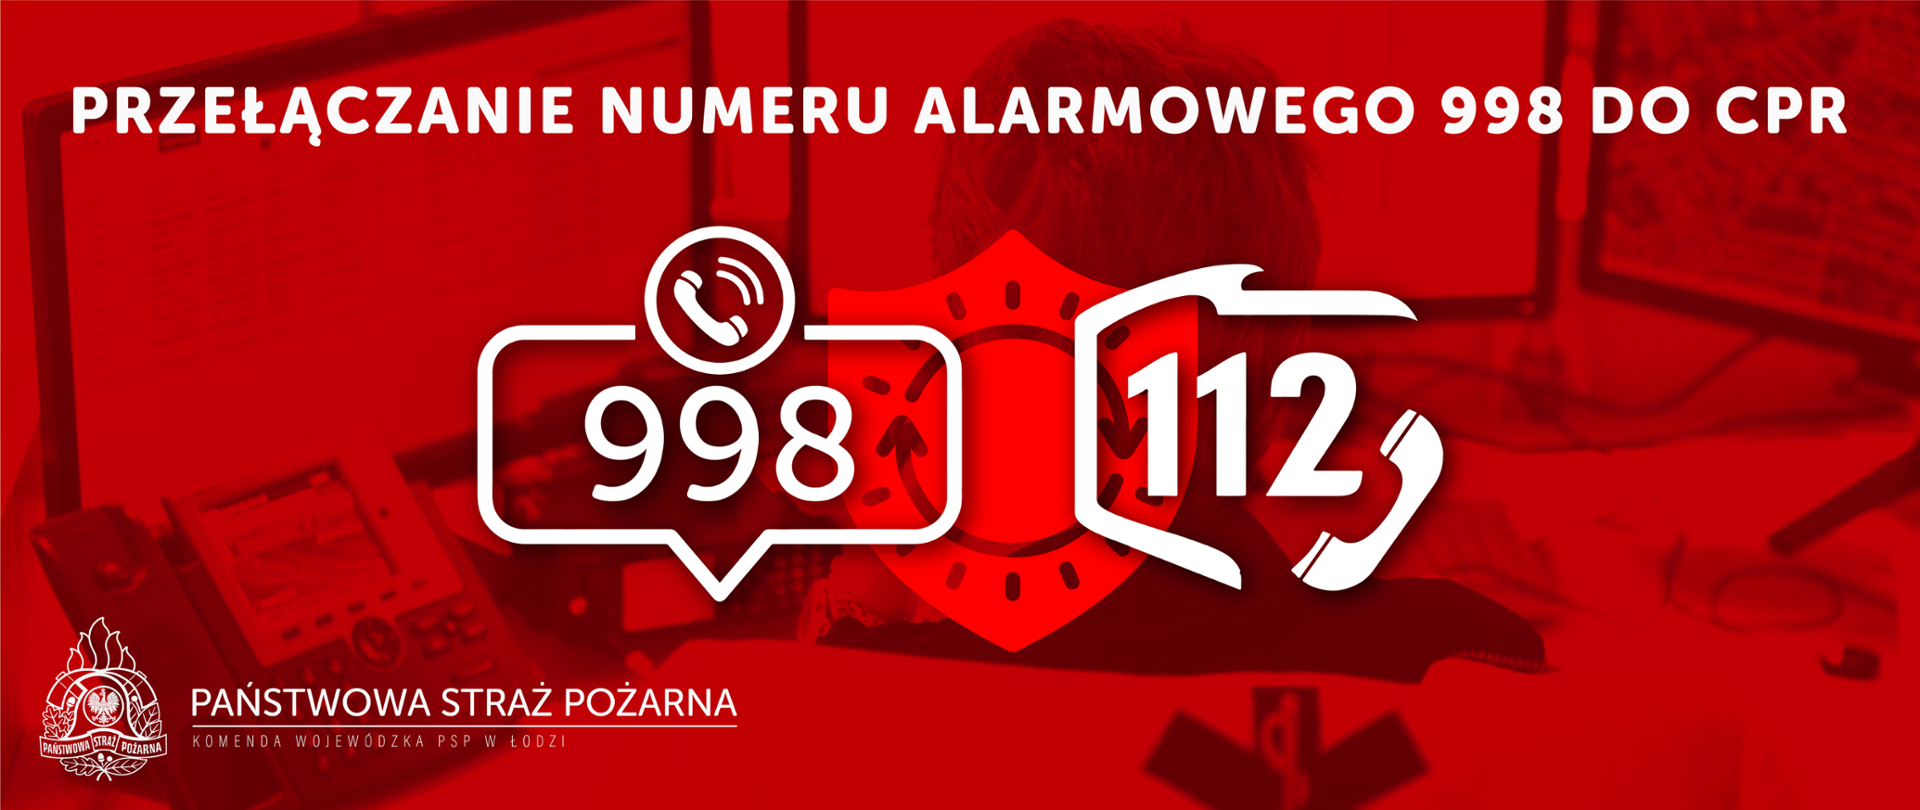 Na czerwonym tle widać numery telefonów 998 i 112. Po lewej stronie na dole logo i napis Państwowa Straż Pożarna. U góry napis Przełączanie numeru alarmowego 998 co CPR